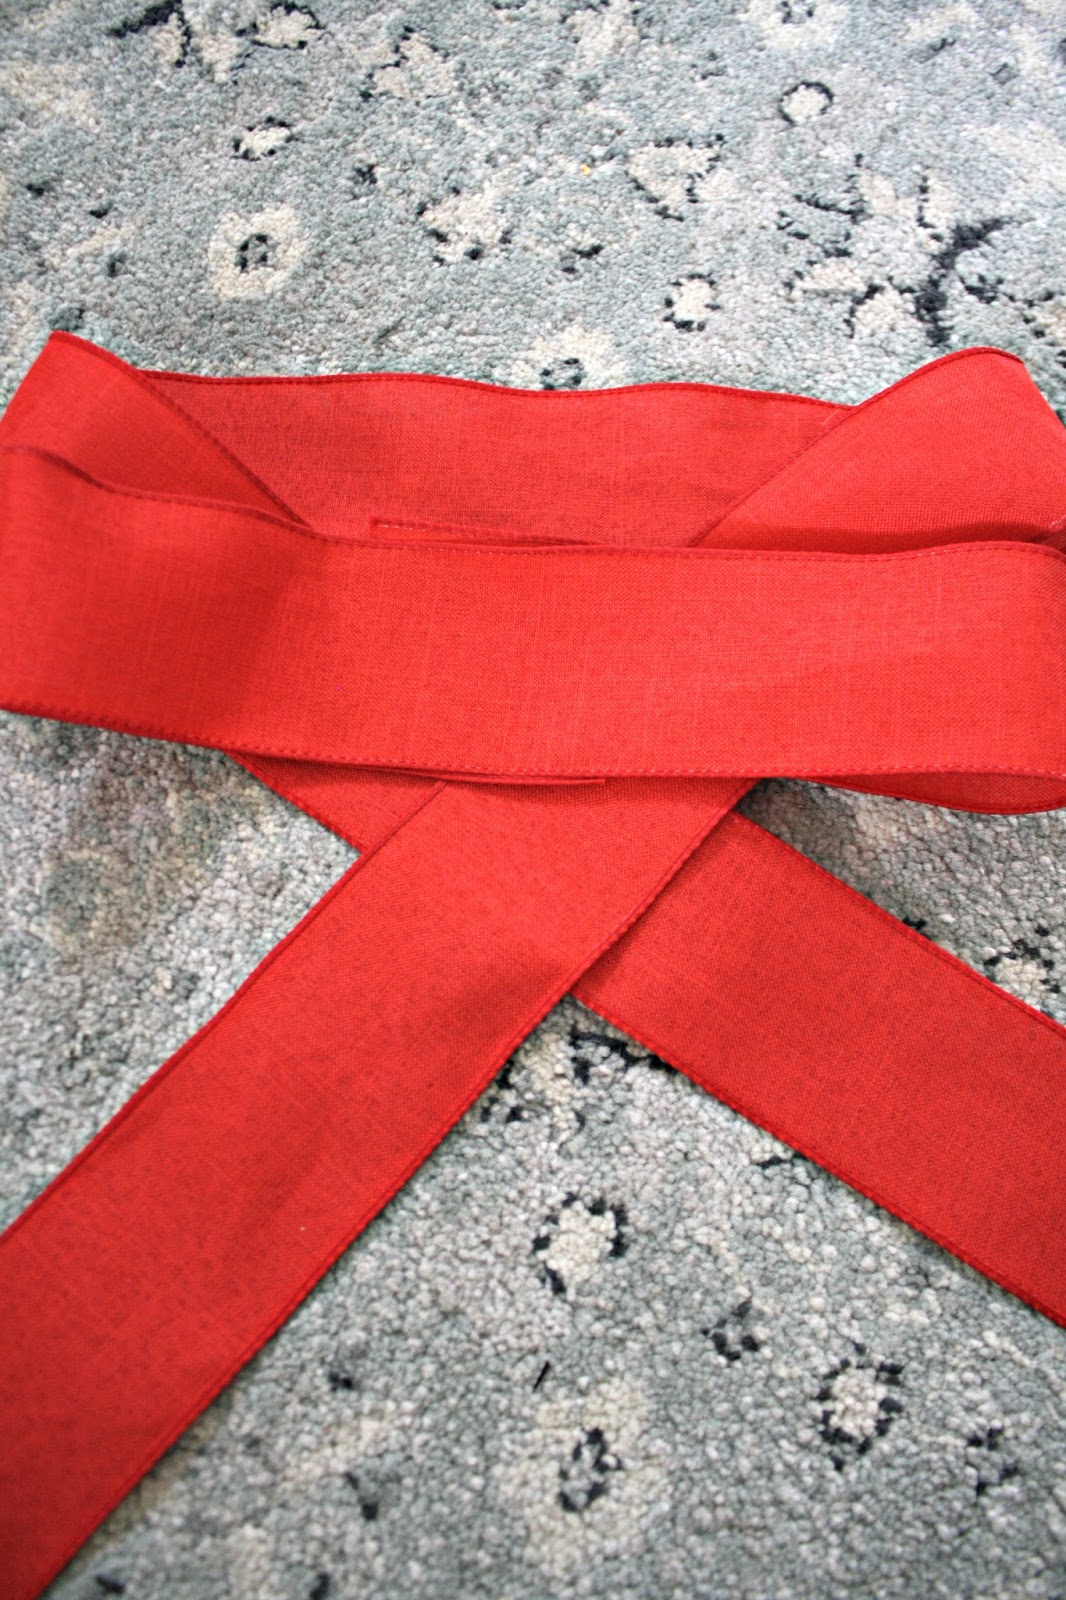 Easy DIY- Big Red Bowdabra® Bow 